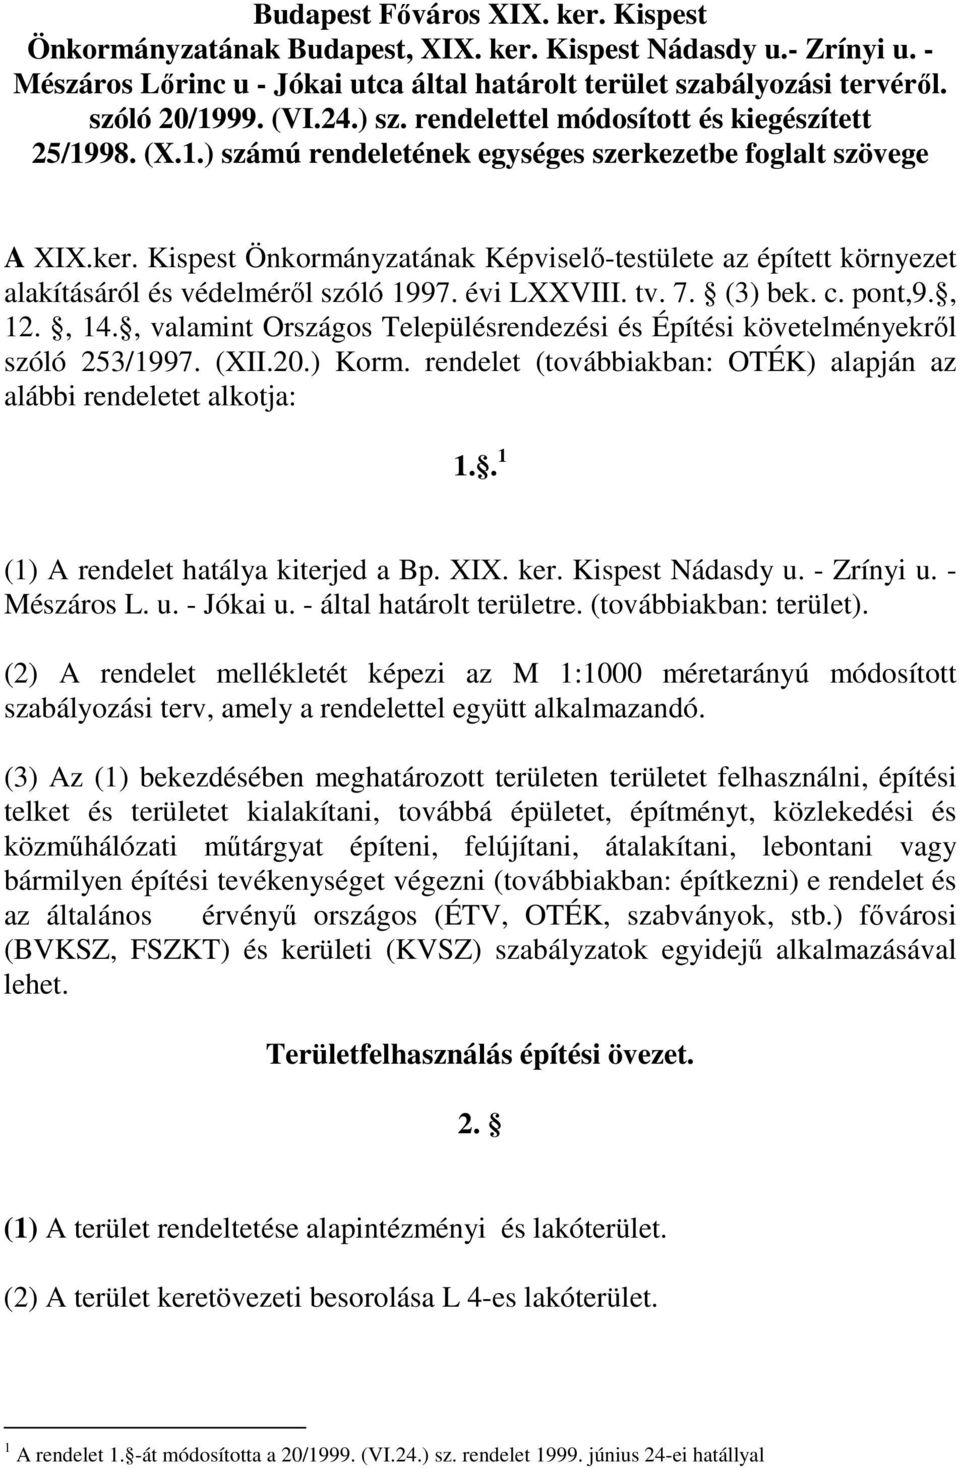 Kispest Önkormányzatának Képviselı-testülete az épített környezet alakításáról és védelmérıl szóló 1997. évi LXXVIII. tv. 7. (3) bek. c. pont,9., 12., 14.